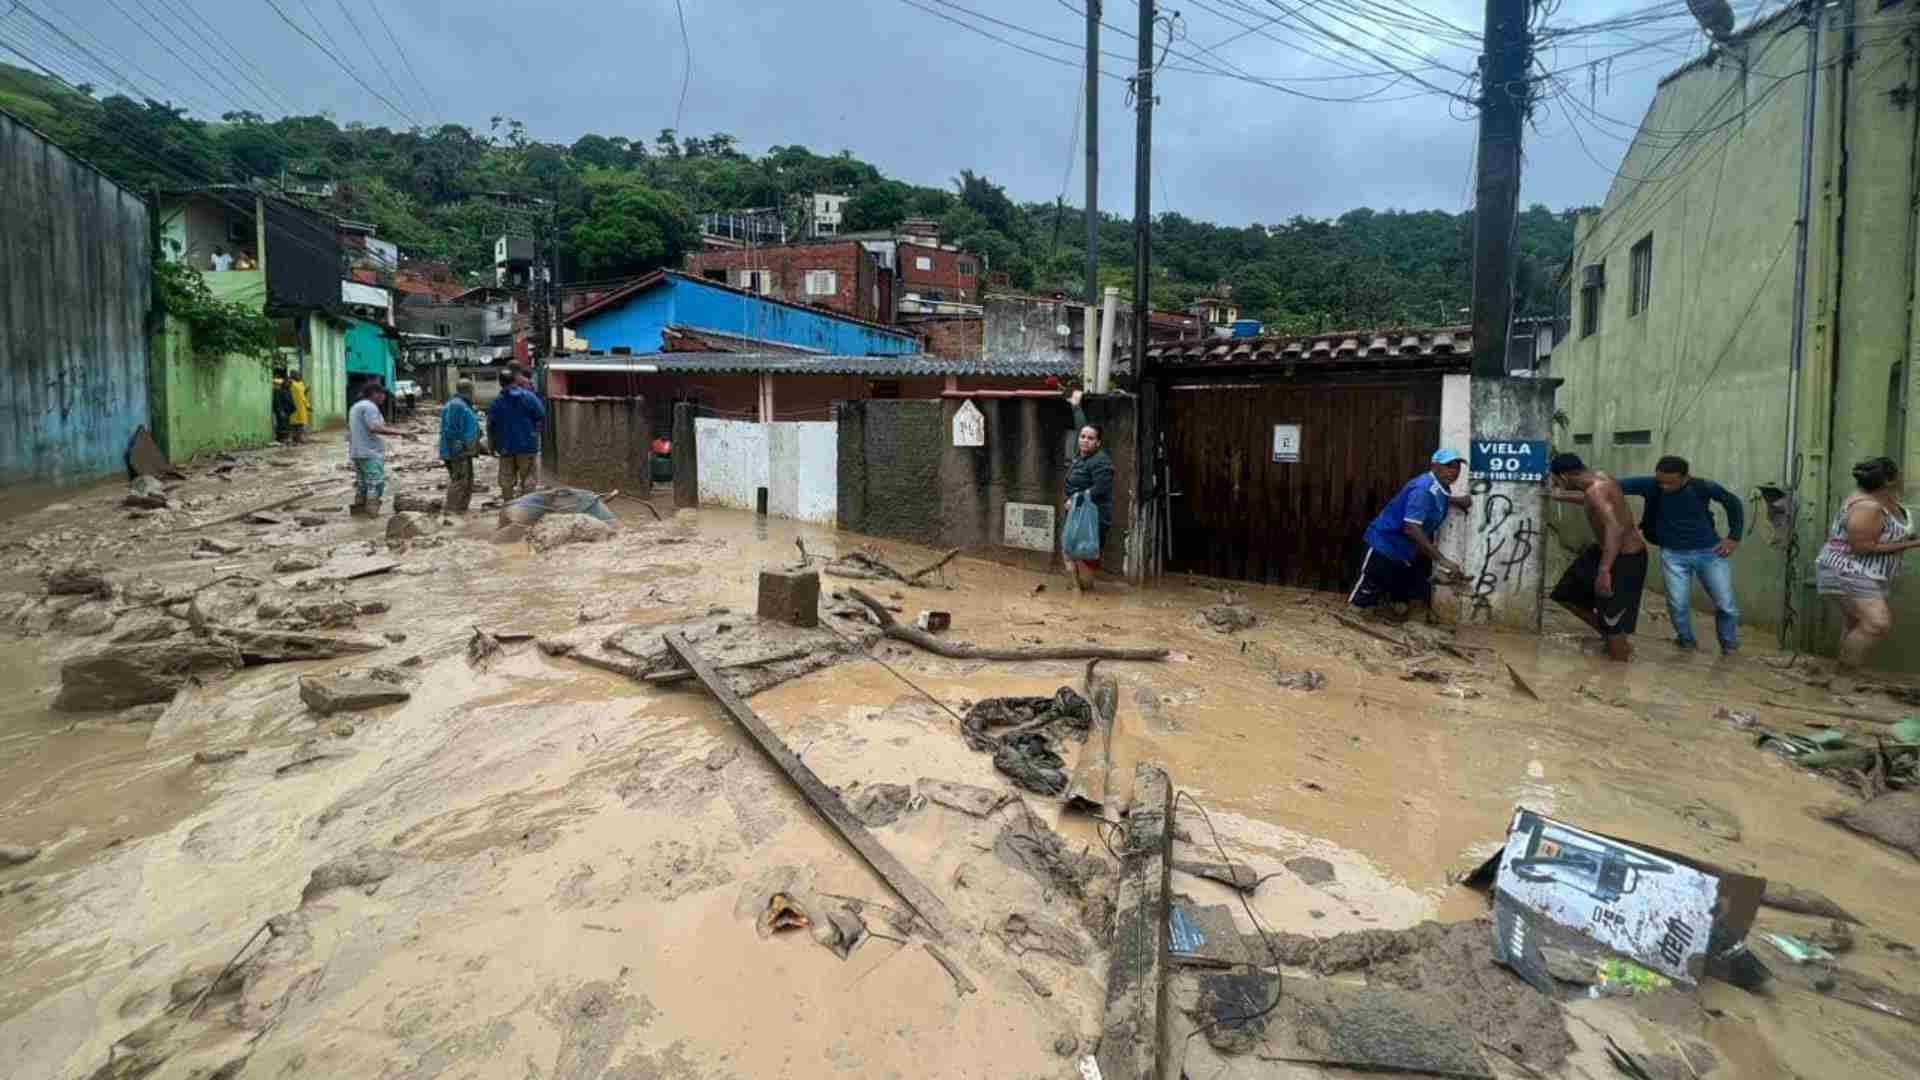 Lluvias torrenciales en Brasil dejan al menos 36 muertos